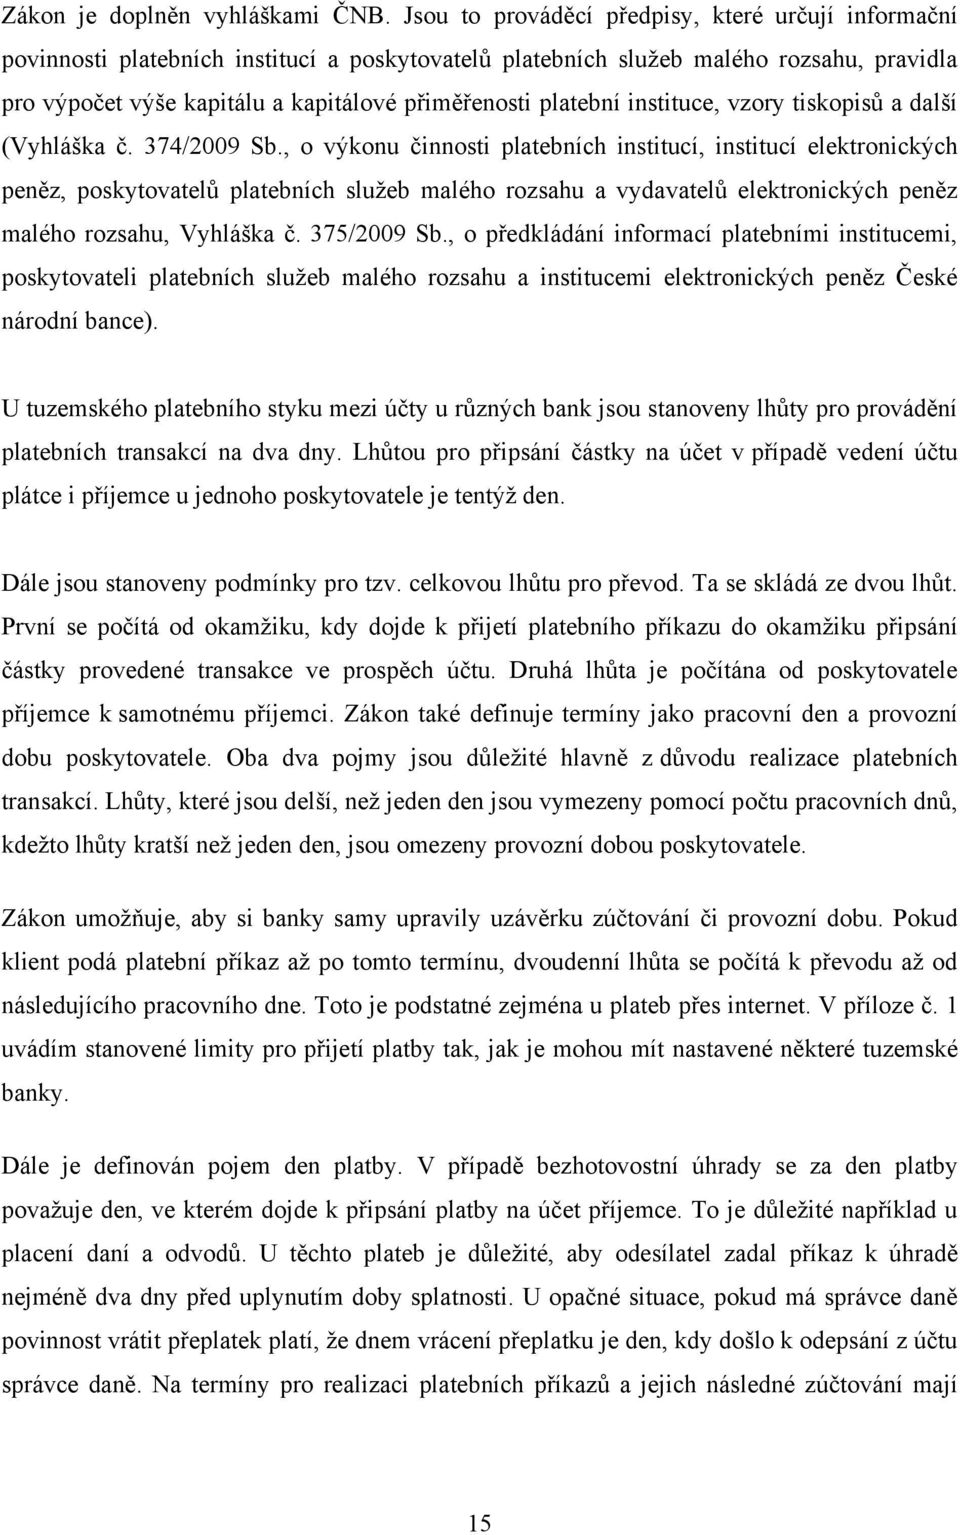 platební instituce, vzory tiskopisů a další (Vyhláška č. 374/2009 Sb.